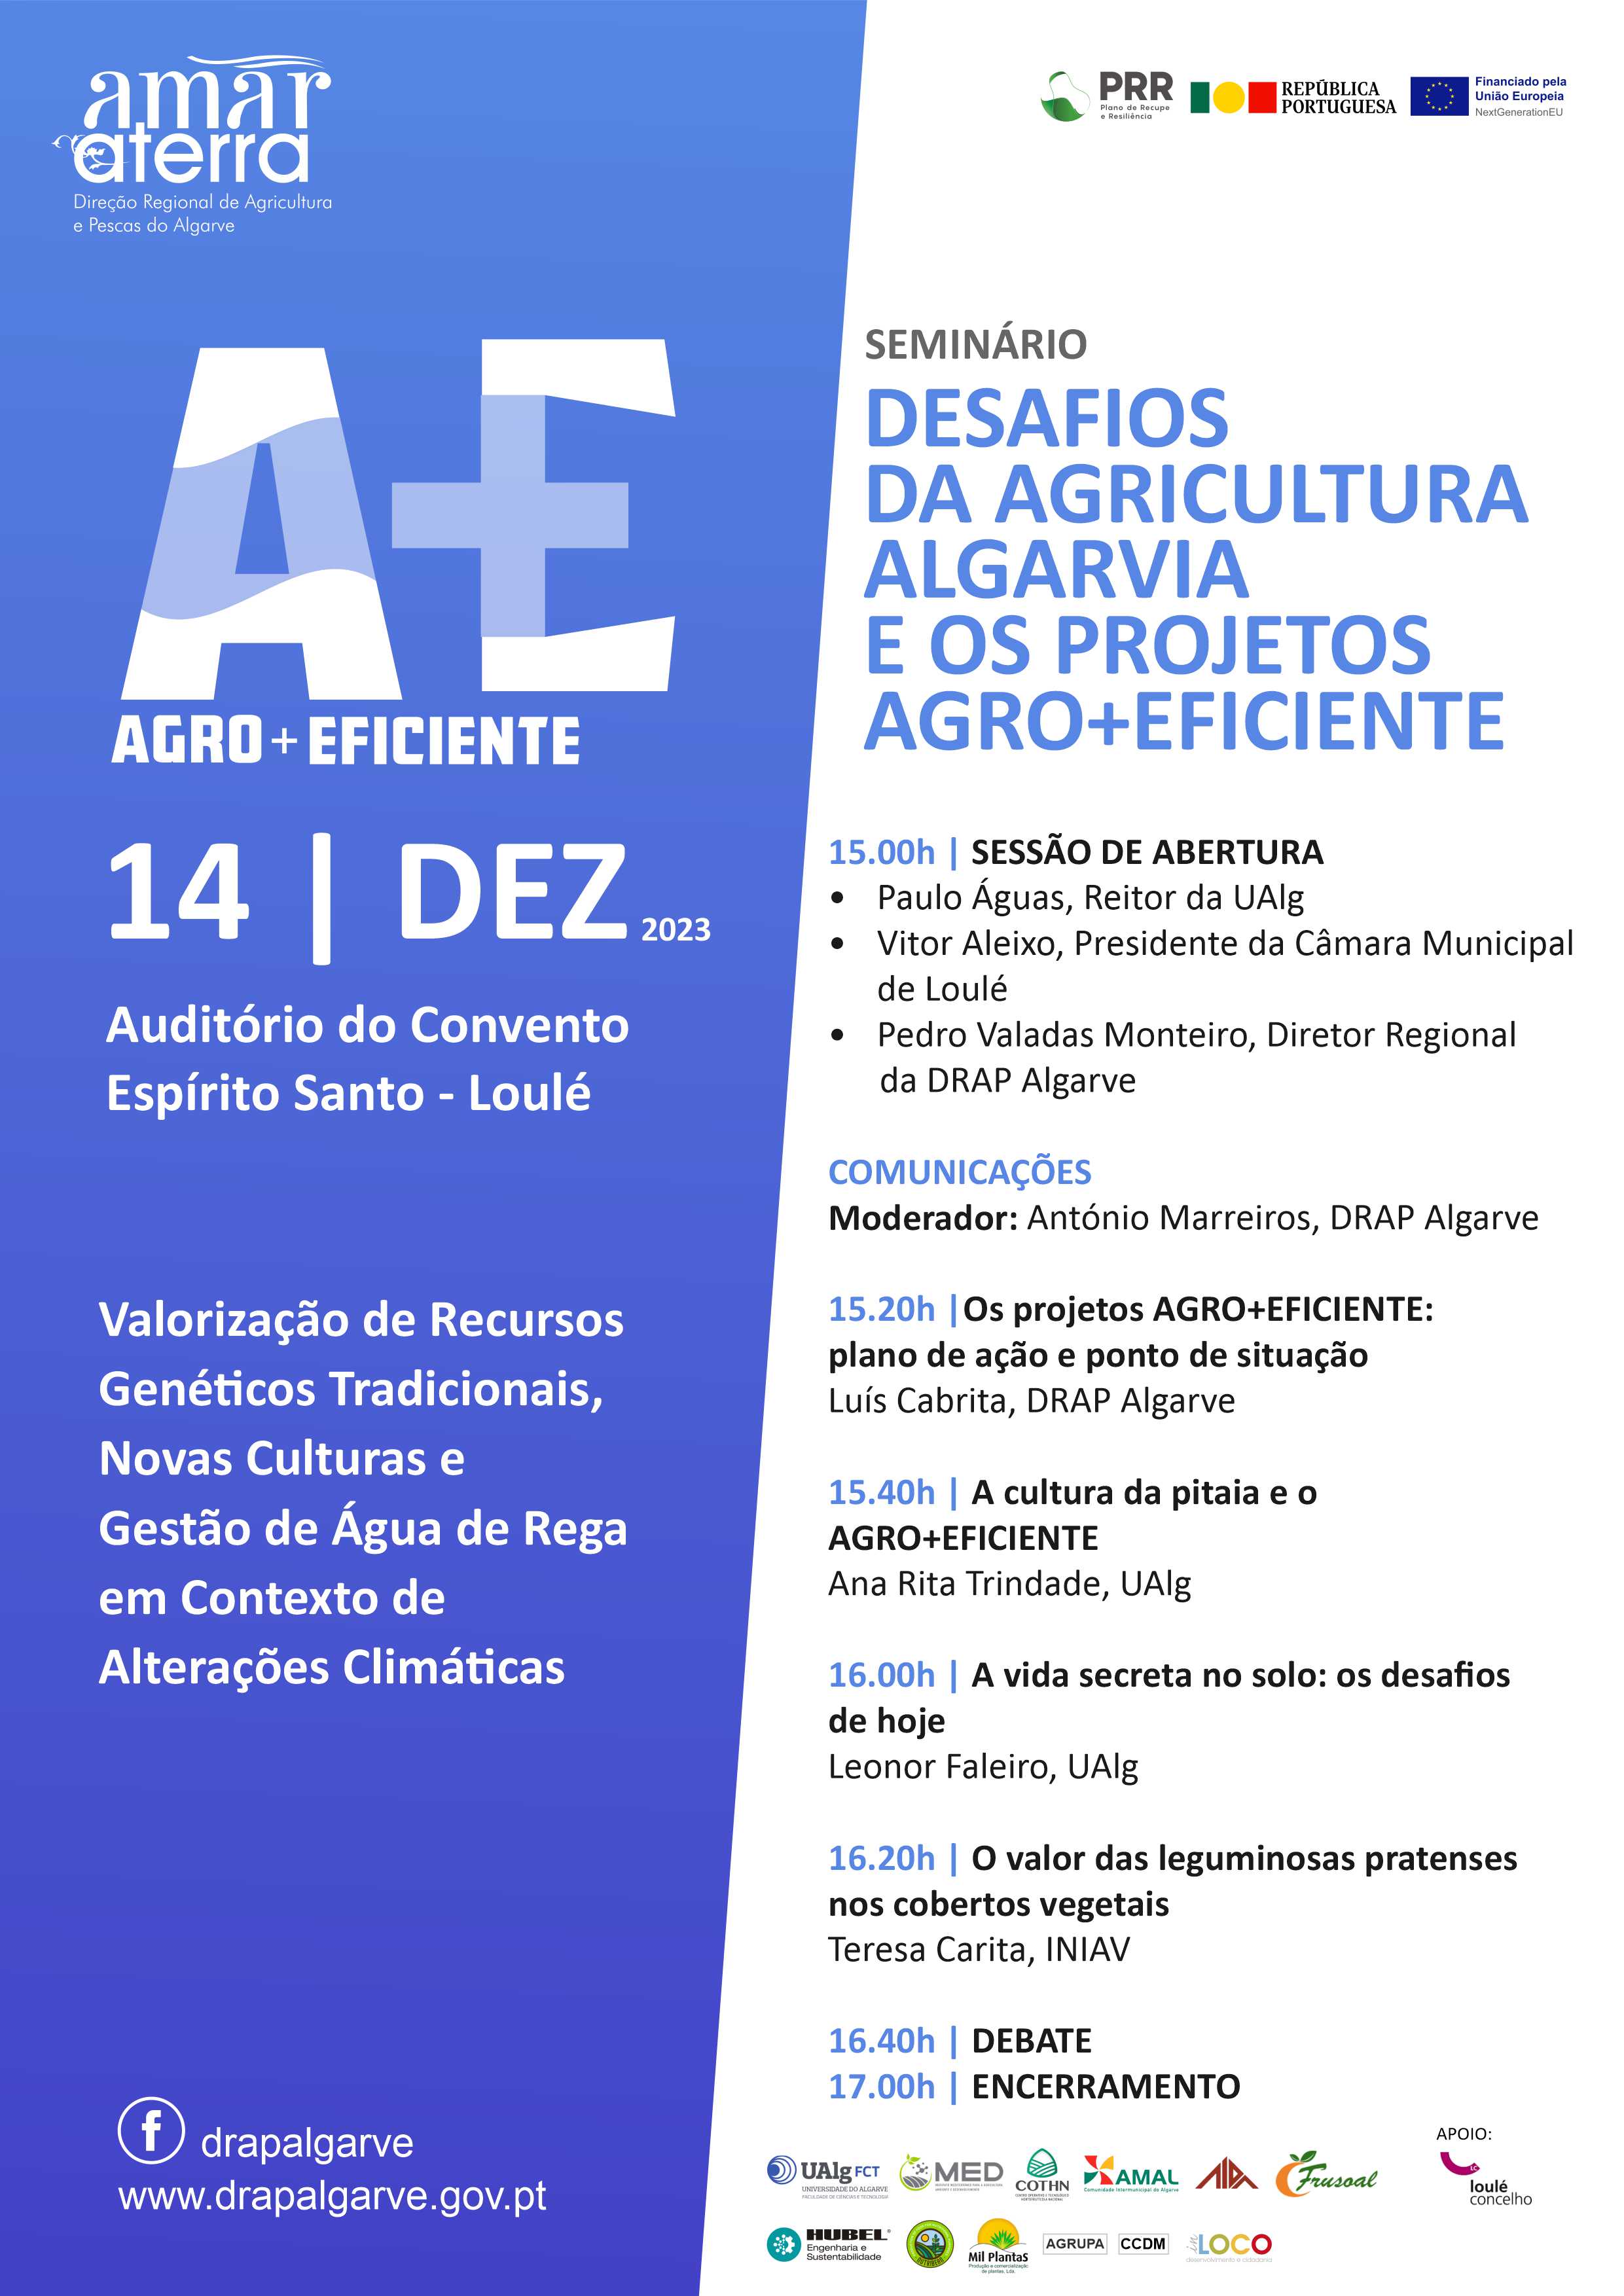 Seminário "Desafios da Agricultura Algarvia e os Projetos Agro+Eficiente"